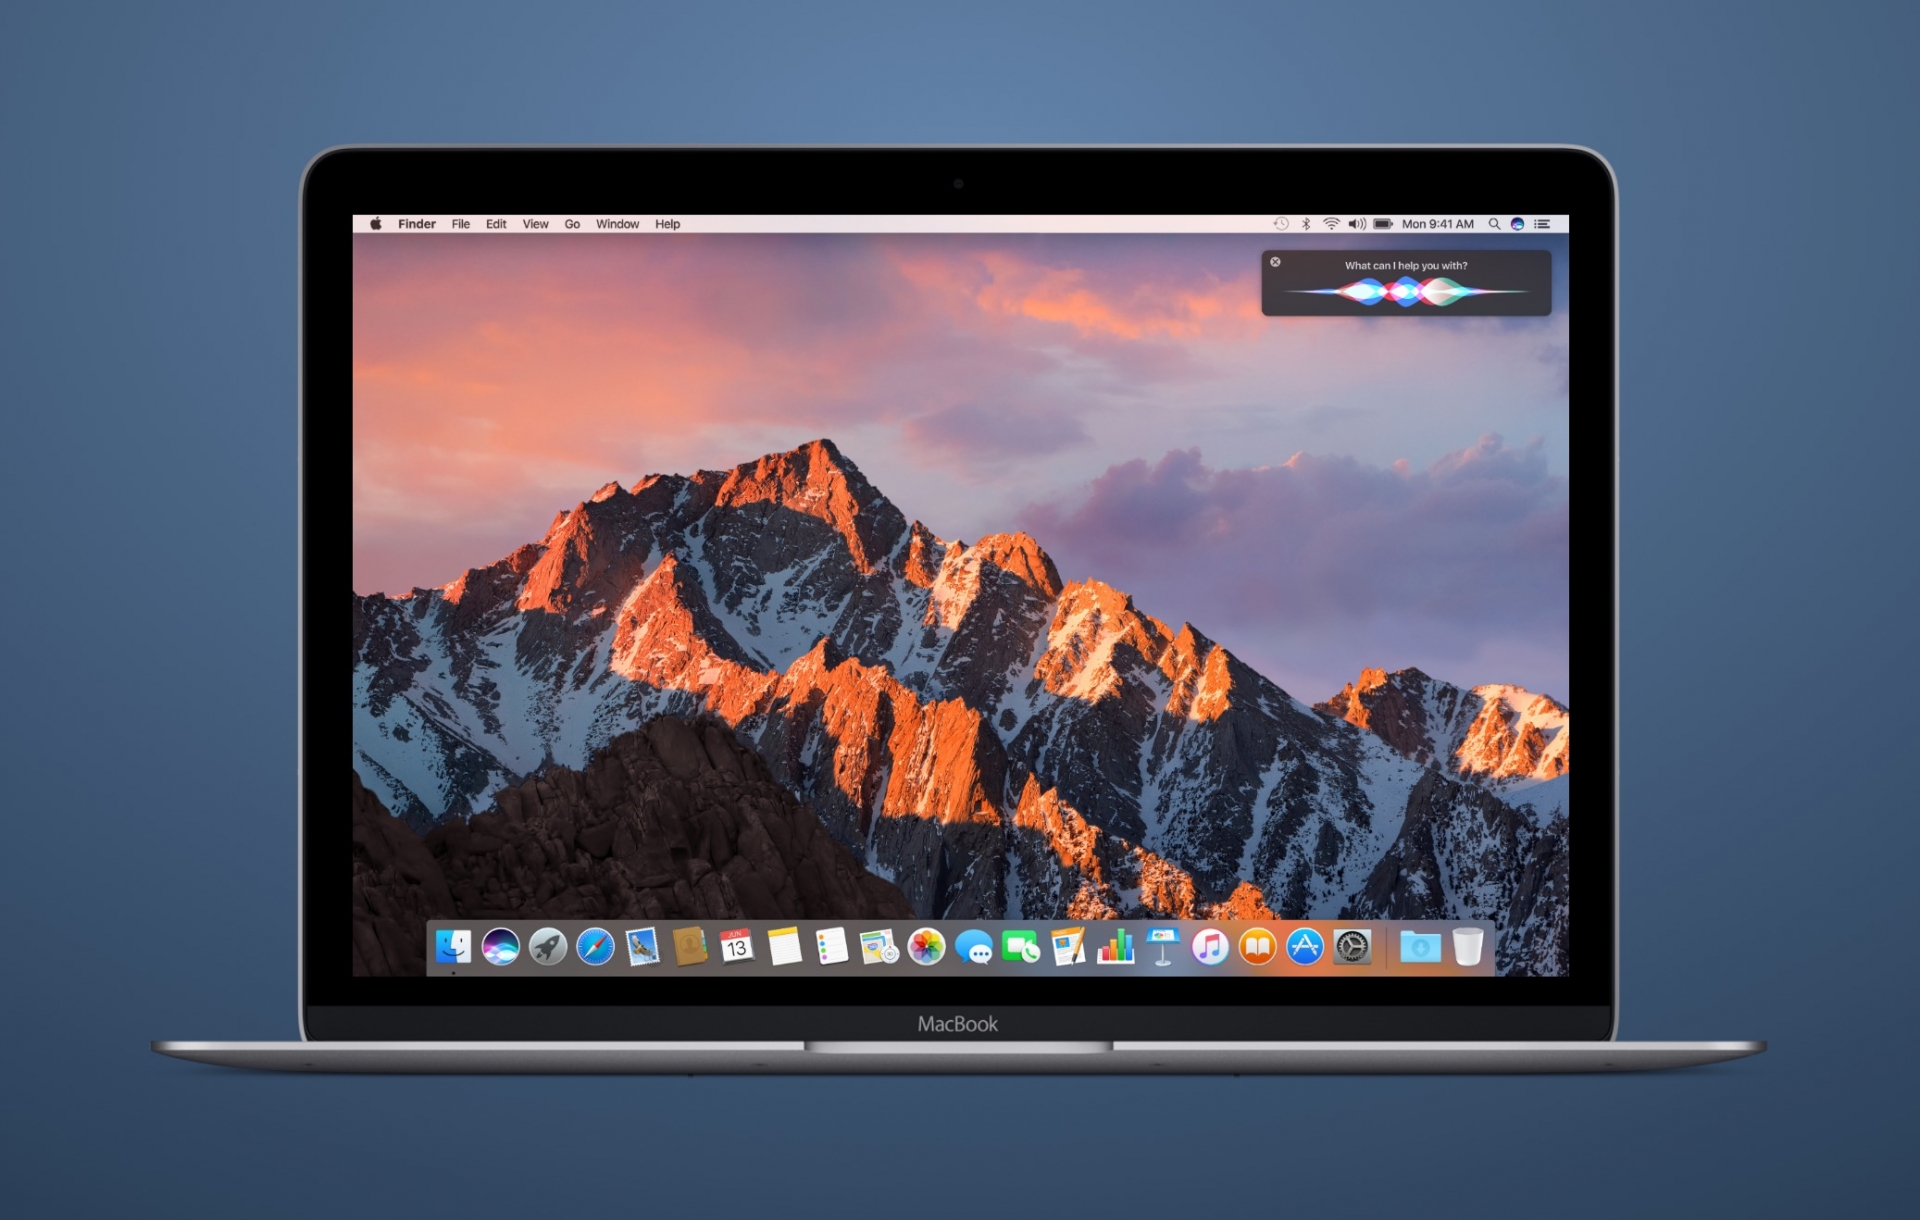 Apple Released beta 4 of iOS 10.2, macOS Sierra 10.12.2, tvOS 10.1 and watchOS 3.1.1